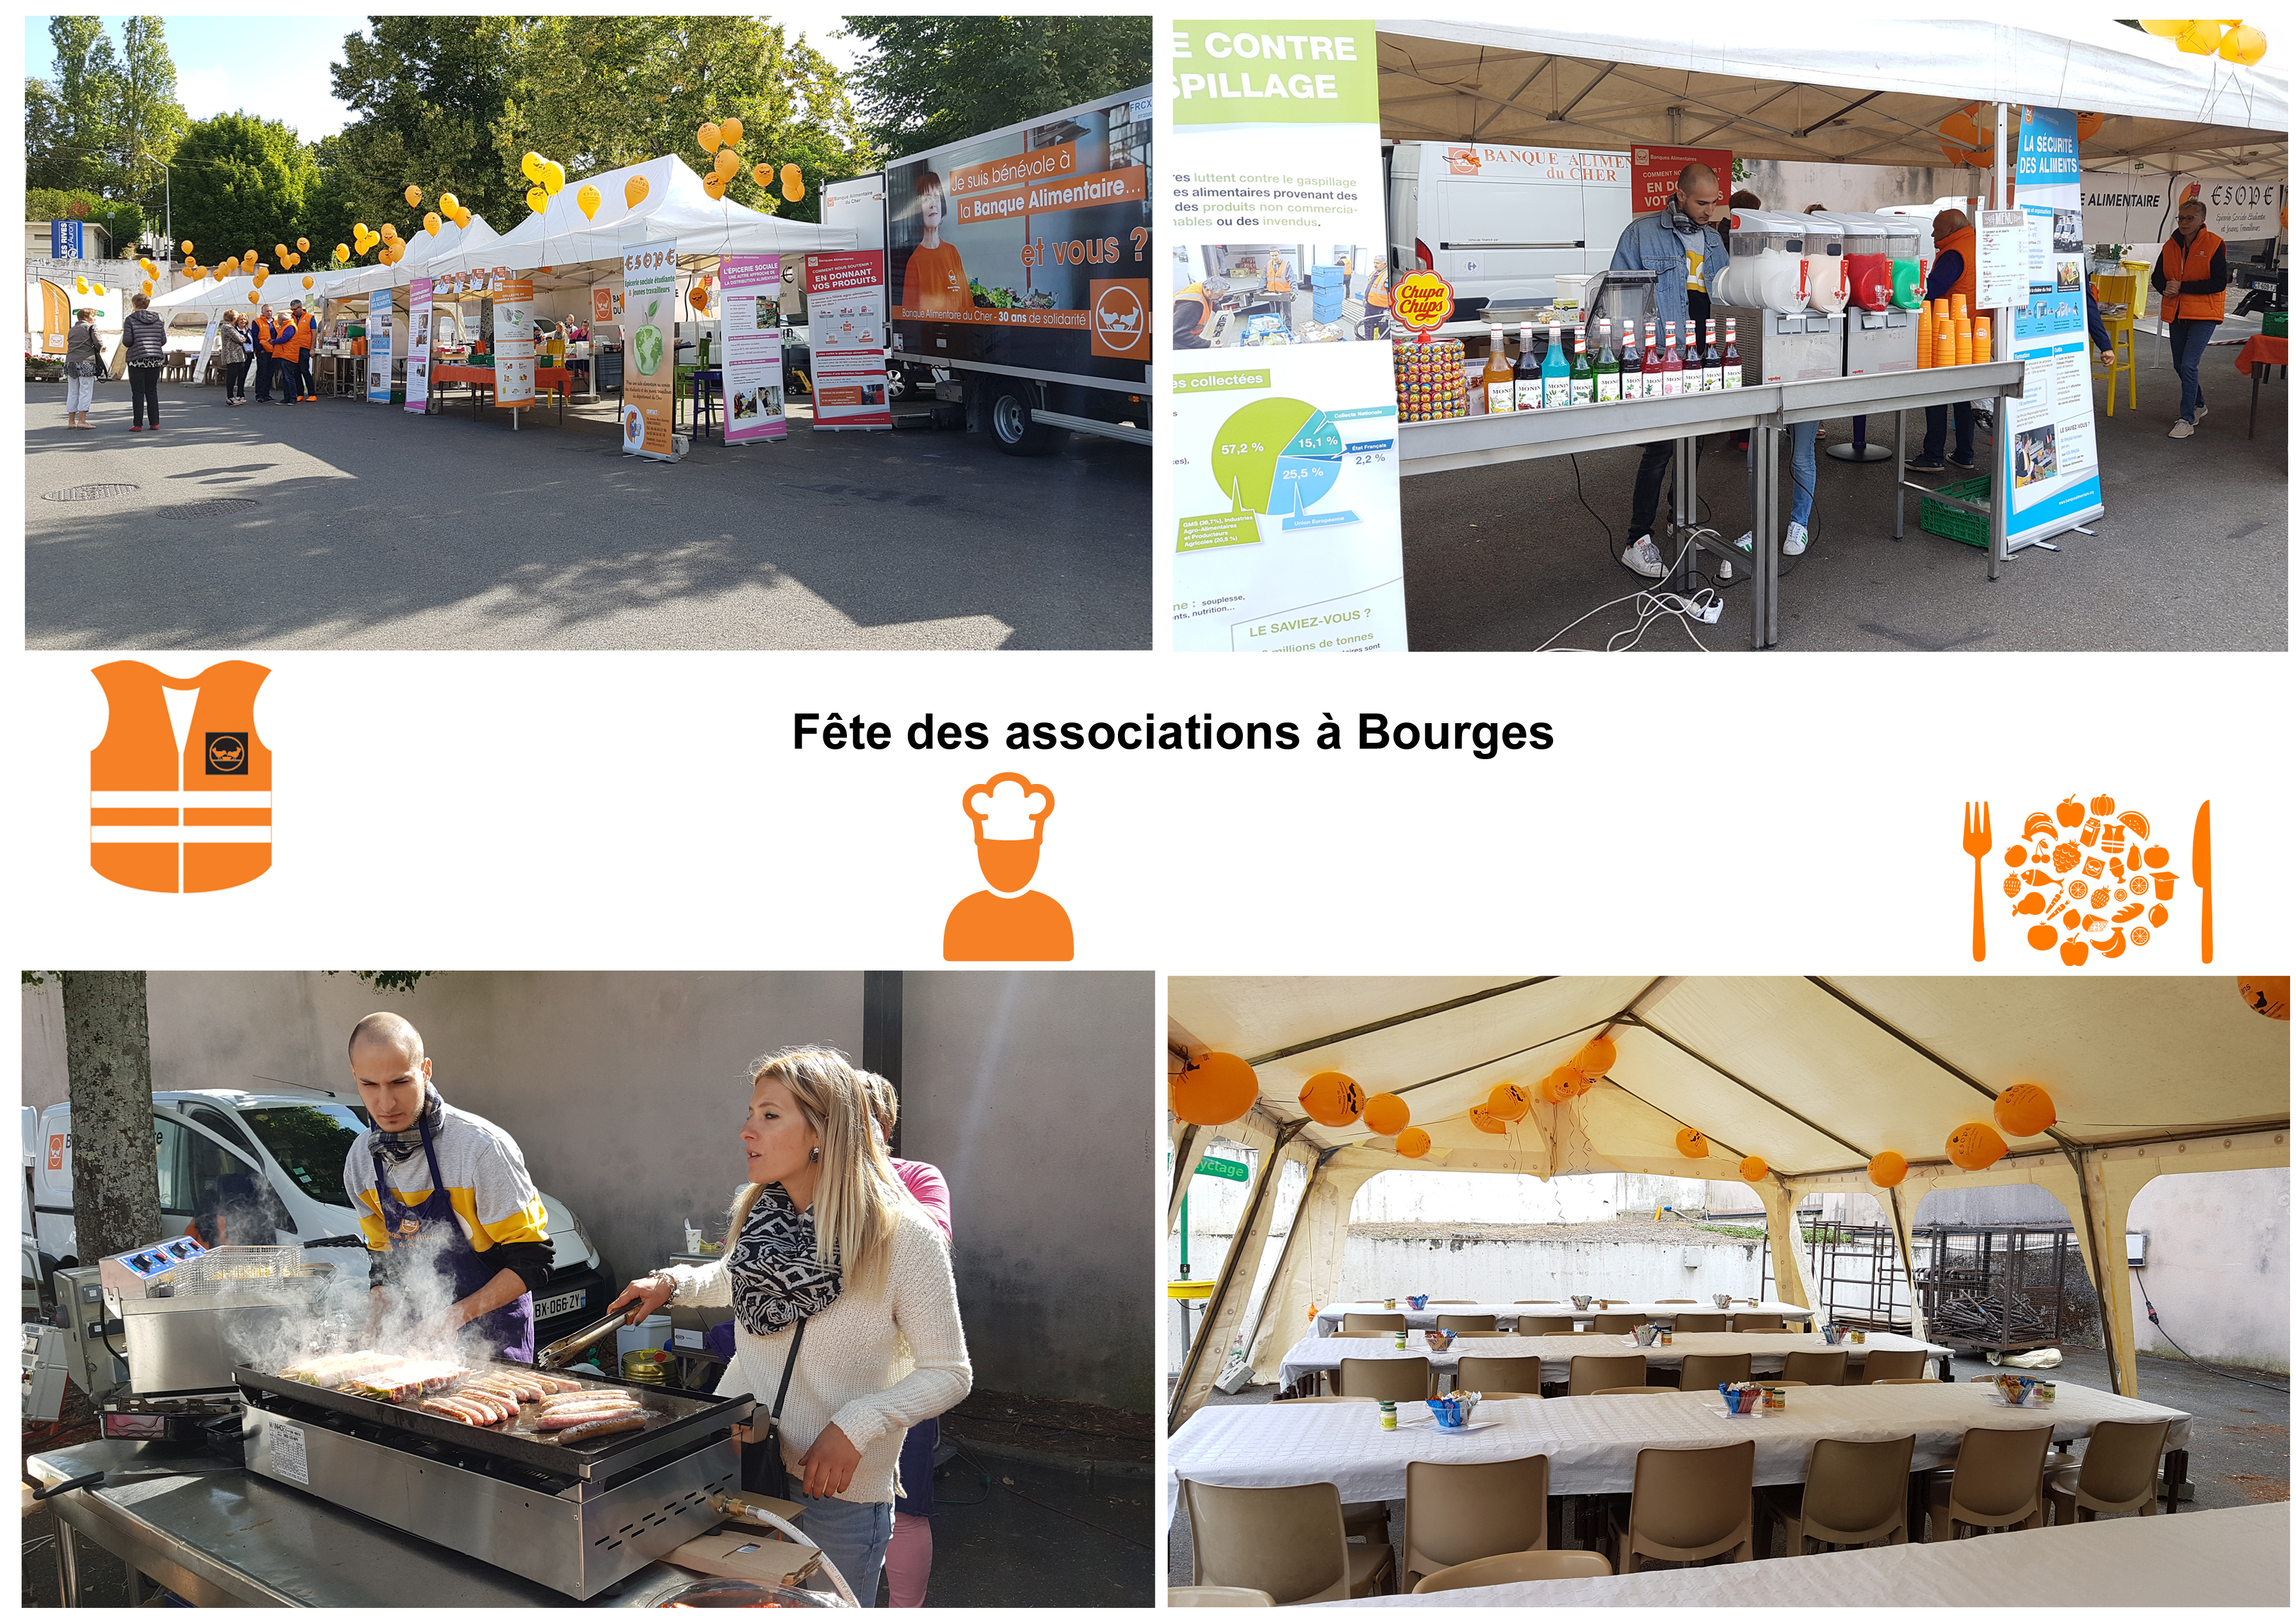 Fête des associations 2019 à Bourges